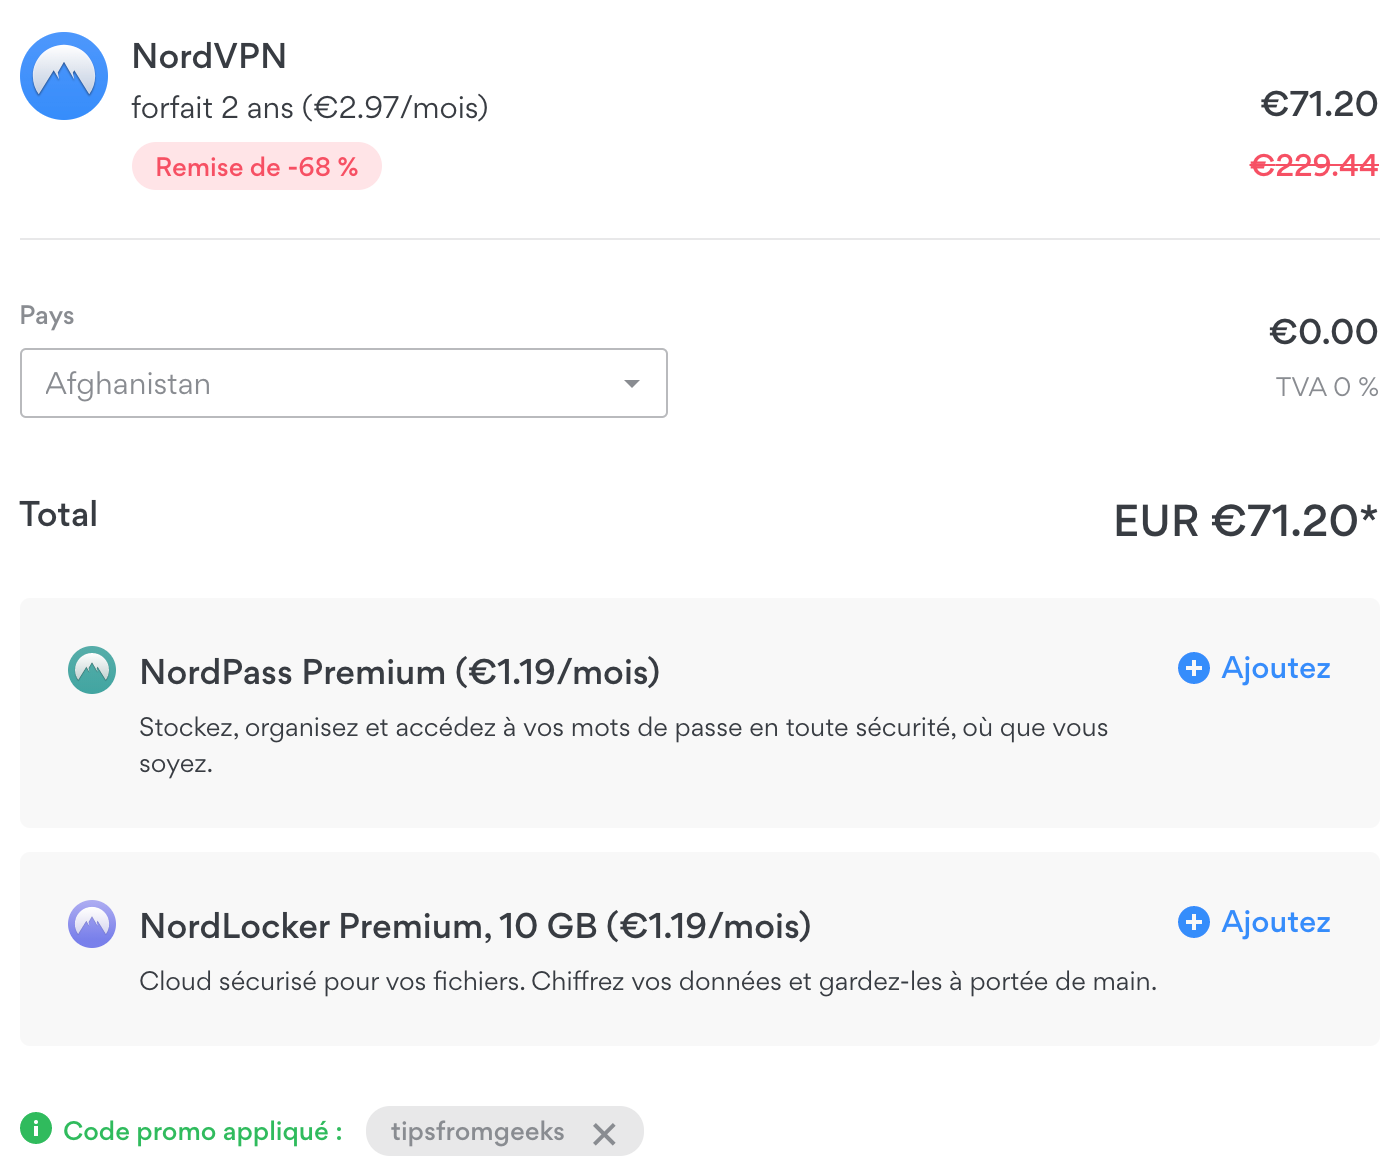 NordVPN à seulement 71.20€ avec le code tipsfromgeeks.